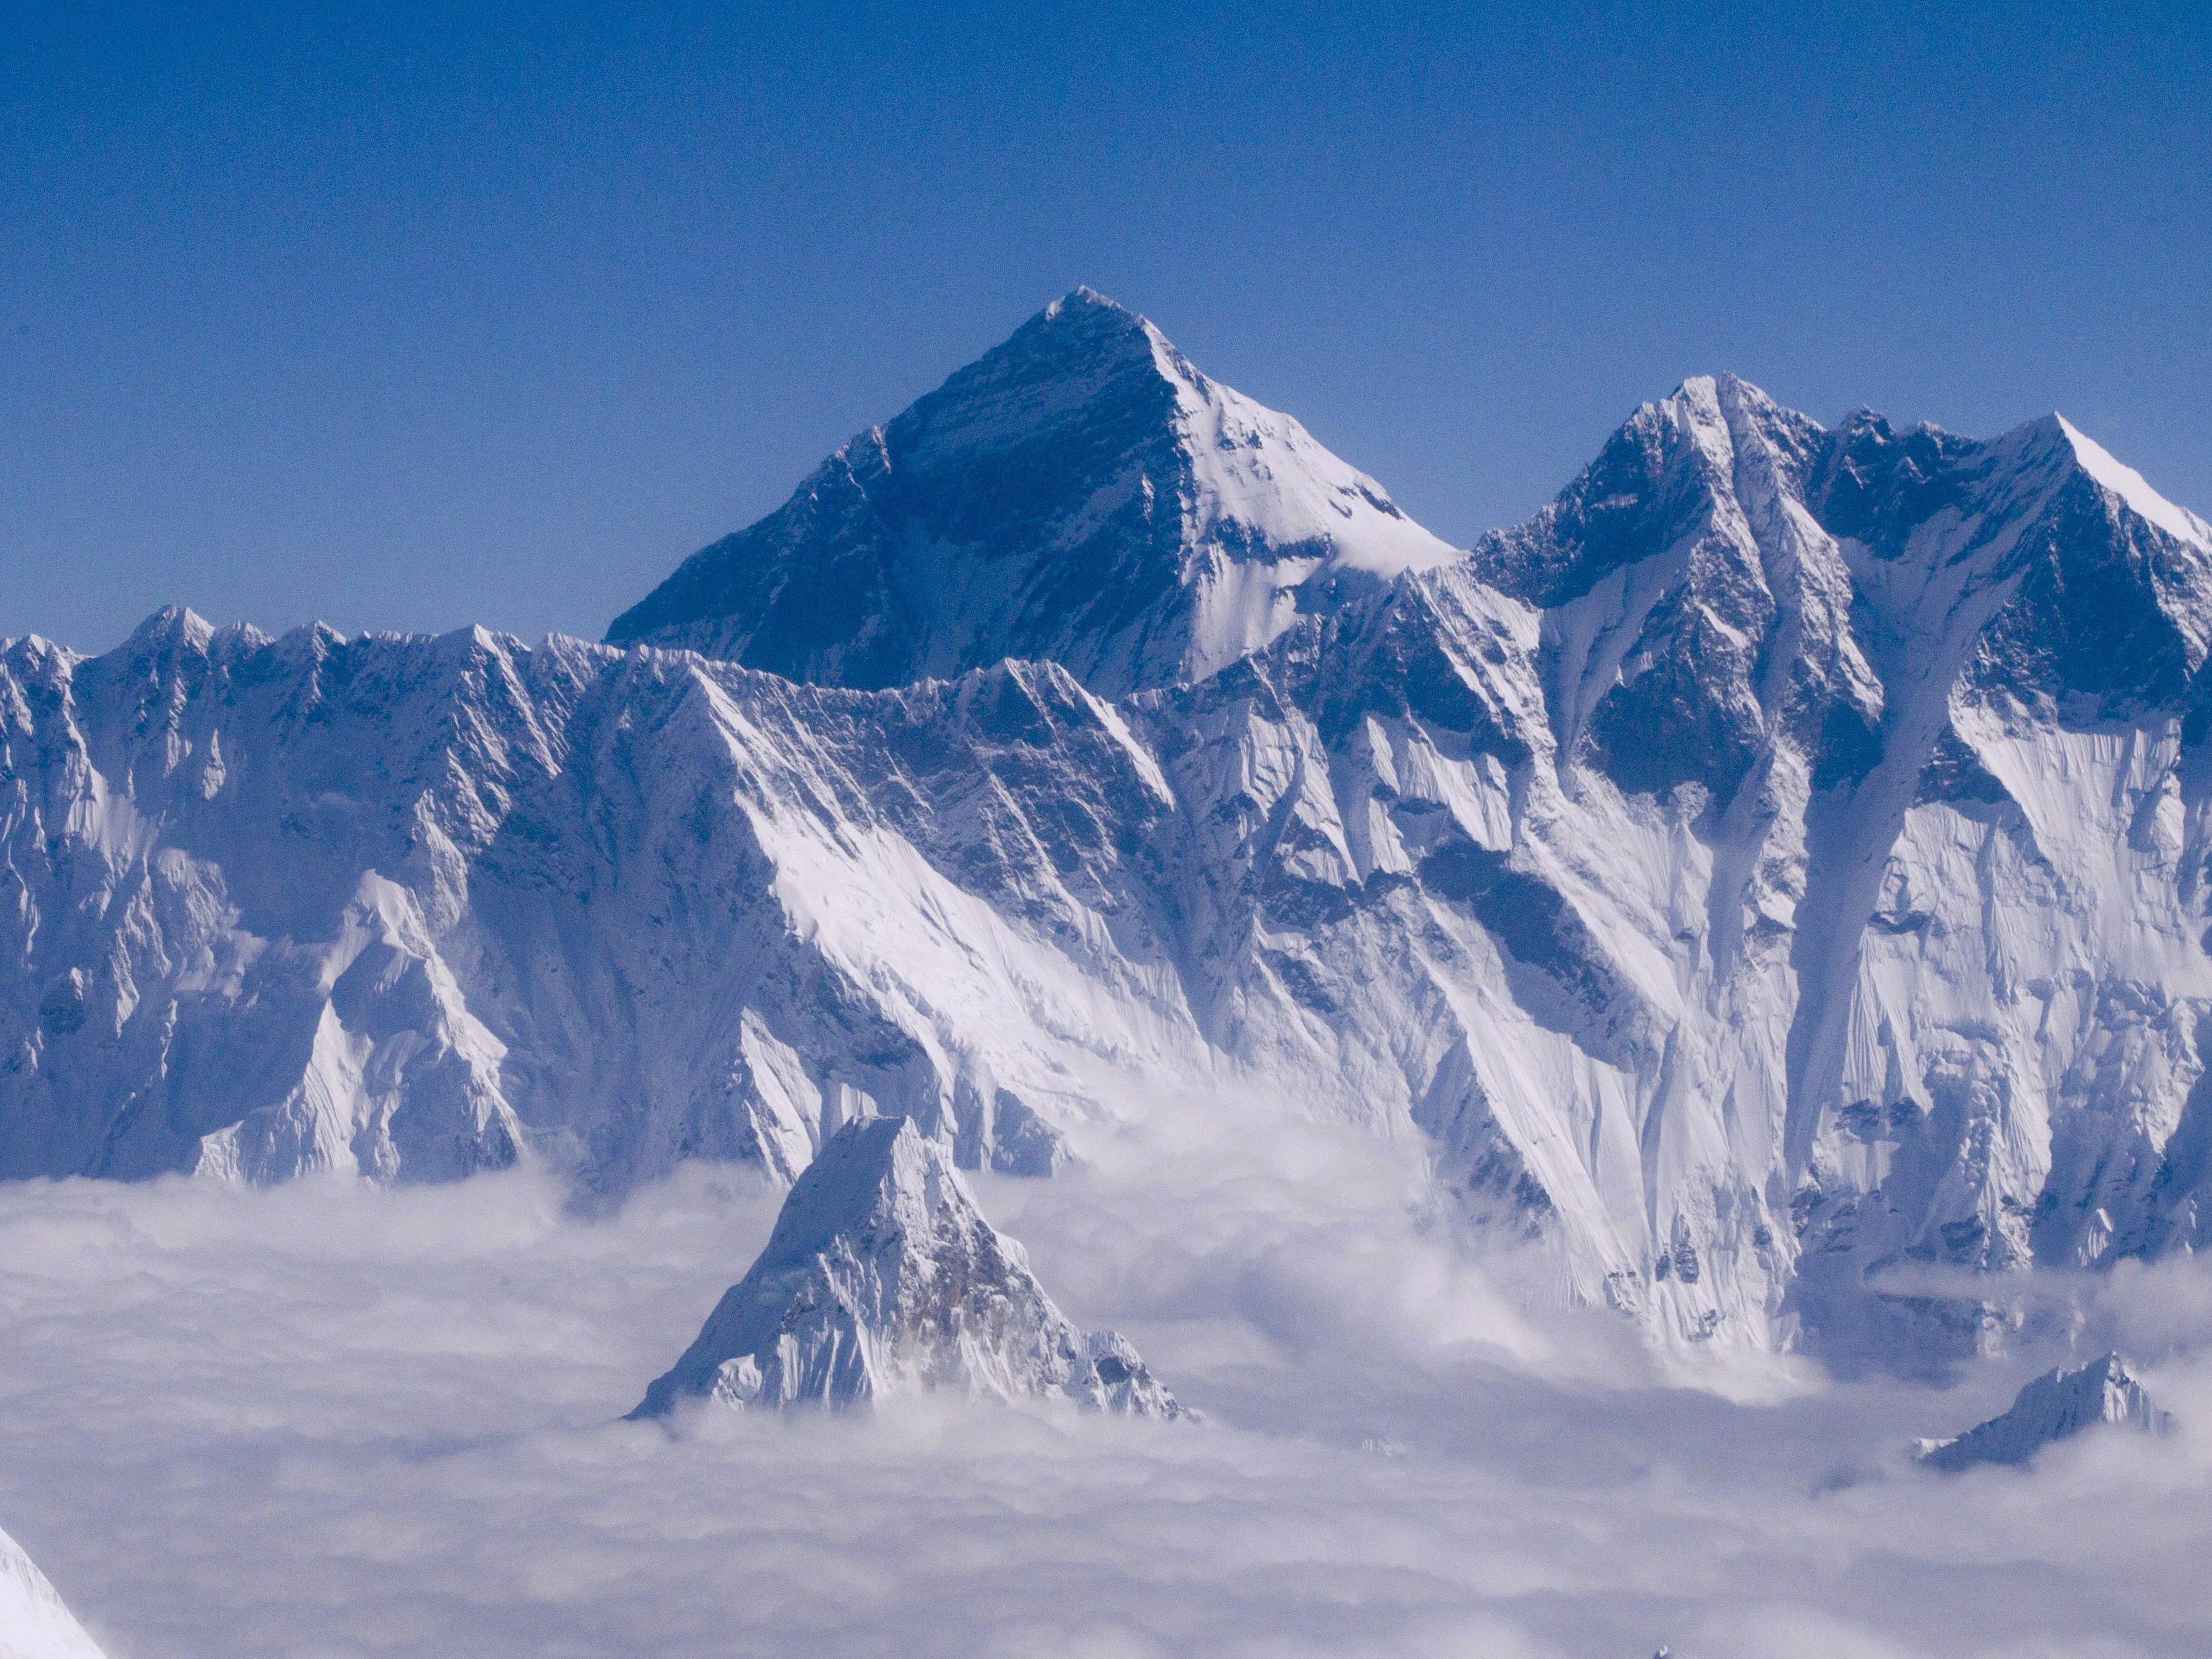 Mit 8.848 Metern, der höchste Berg der Welt - der Mount Everest